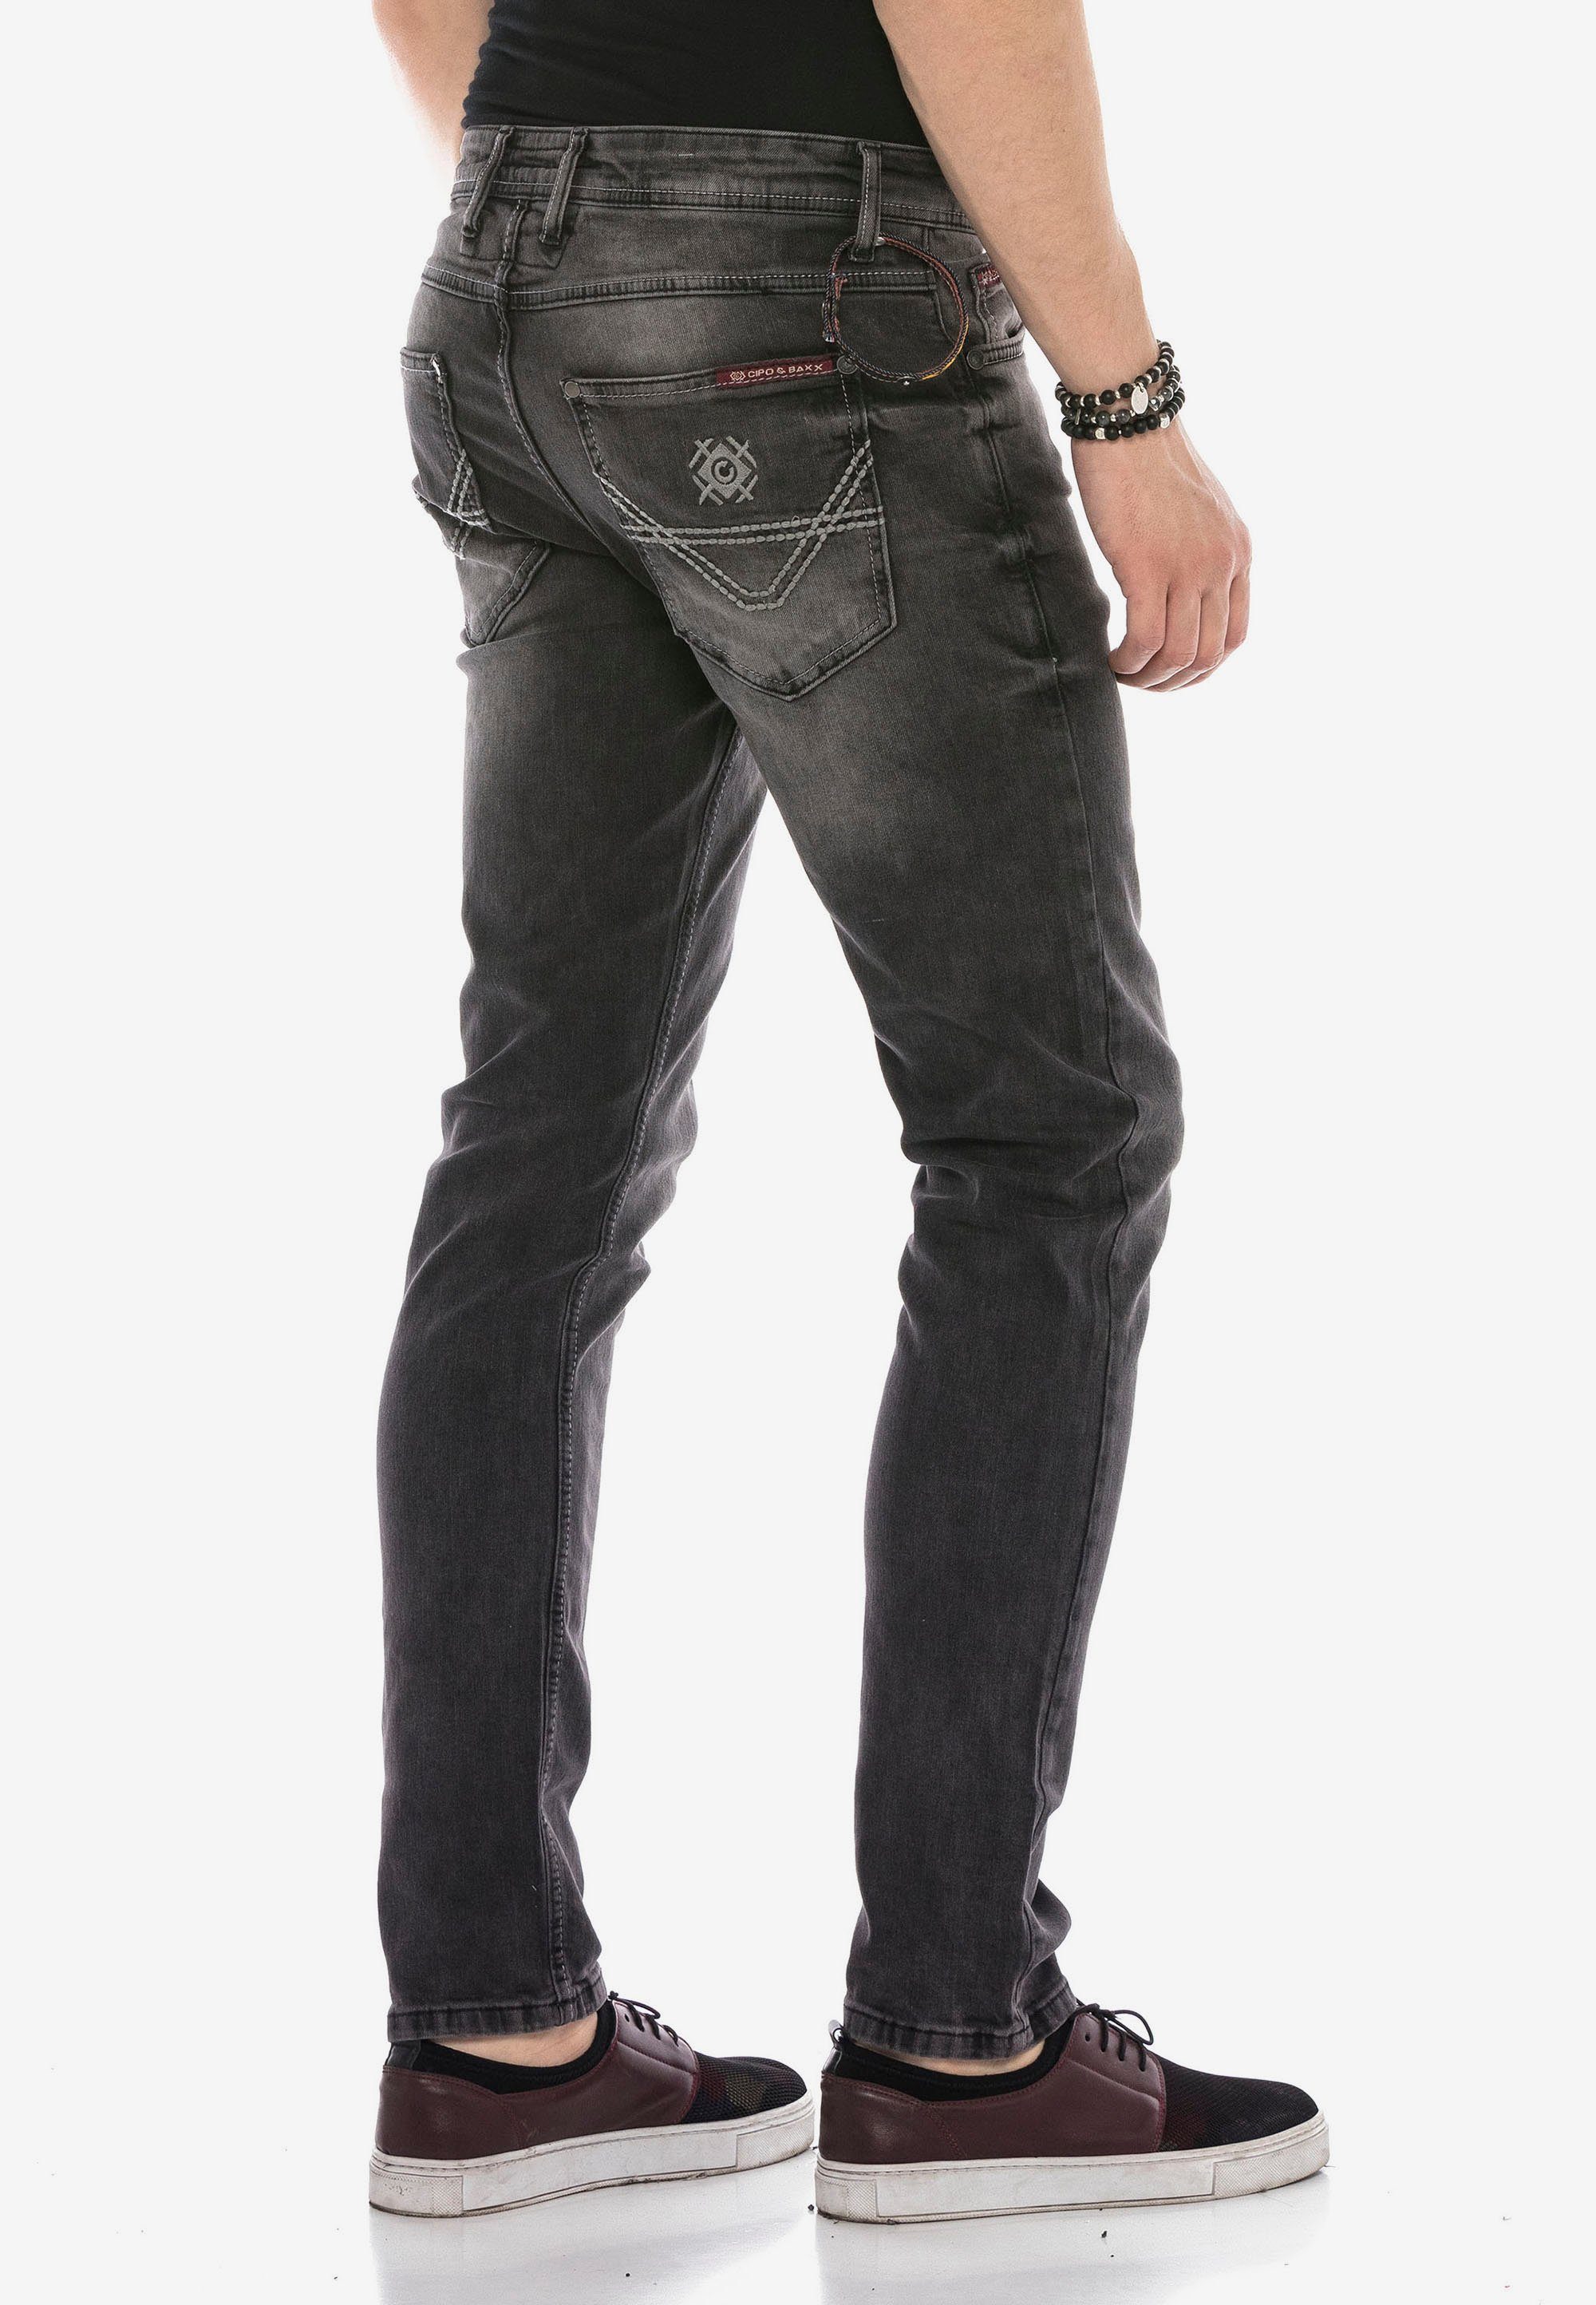 Cipo & Baxx Jeans Bequeme Fit schwarz Passform optimaler in Slim-Straight mit